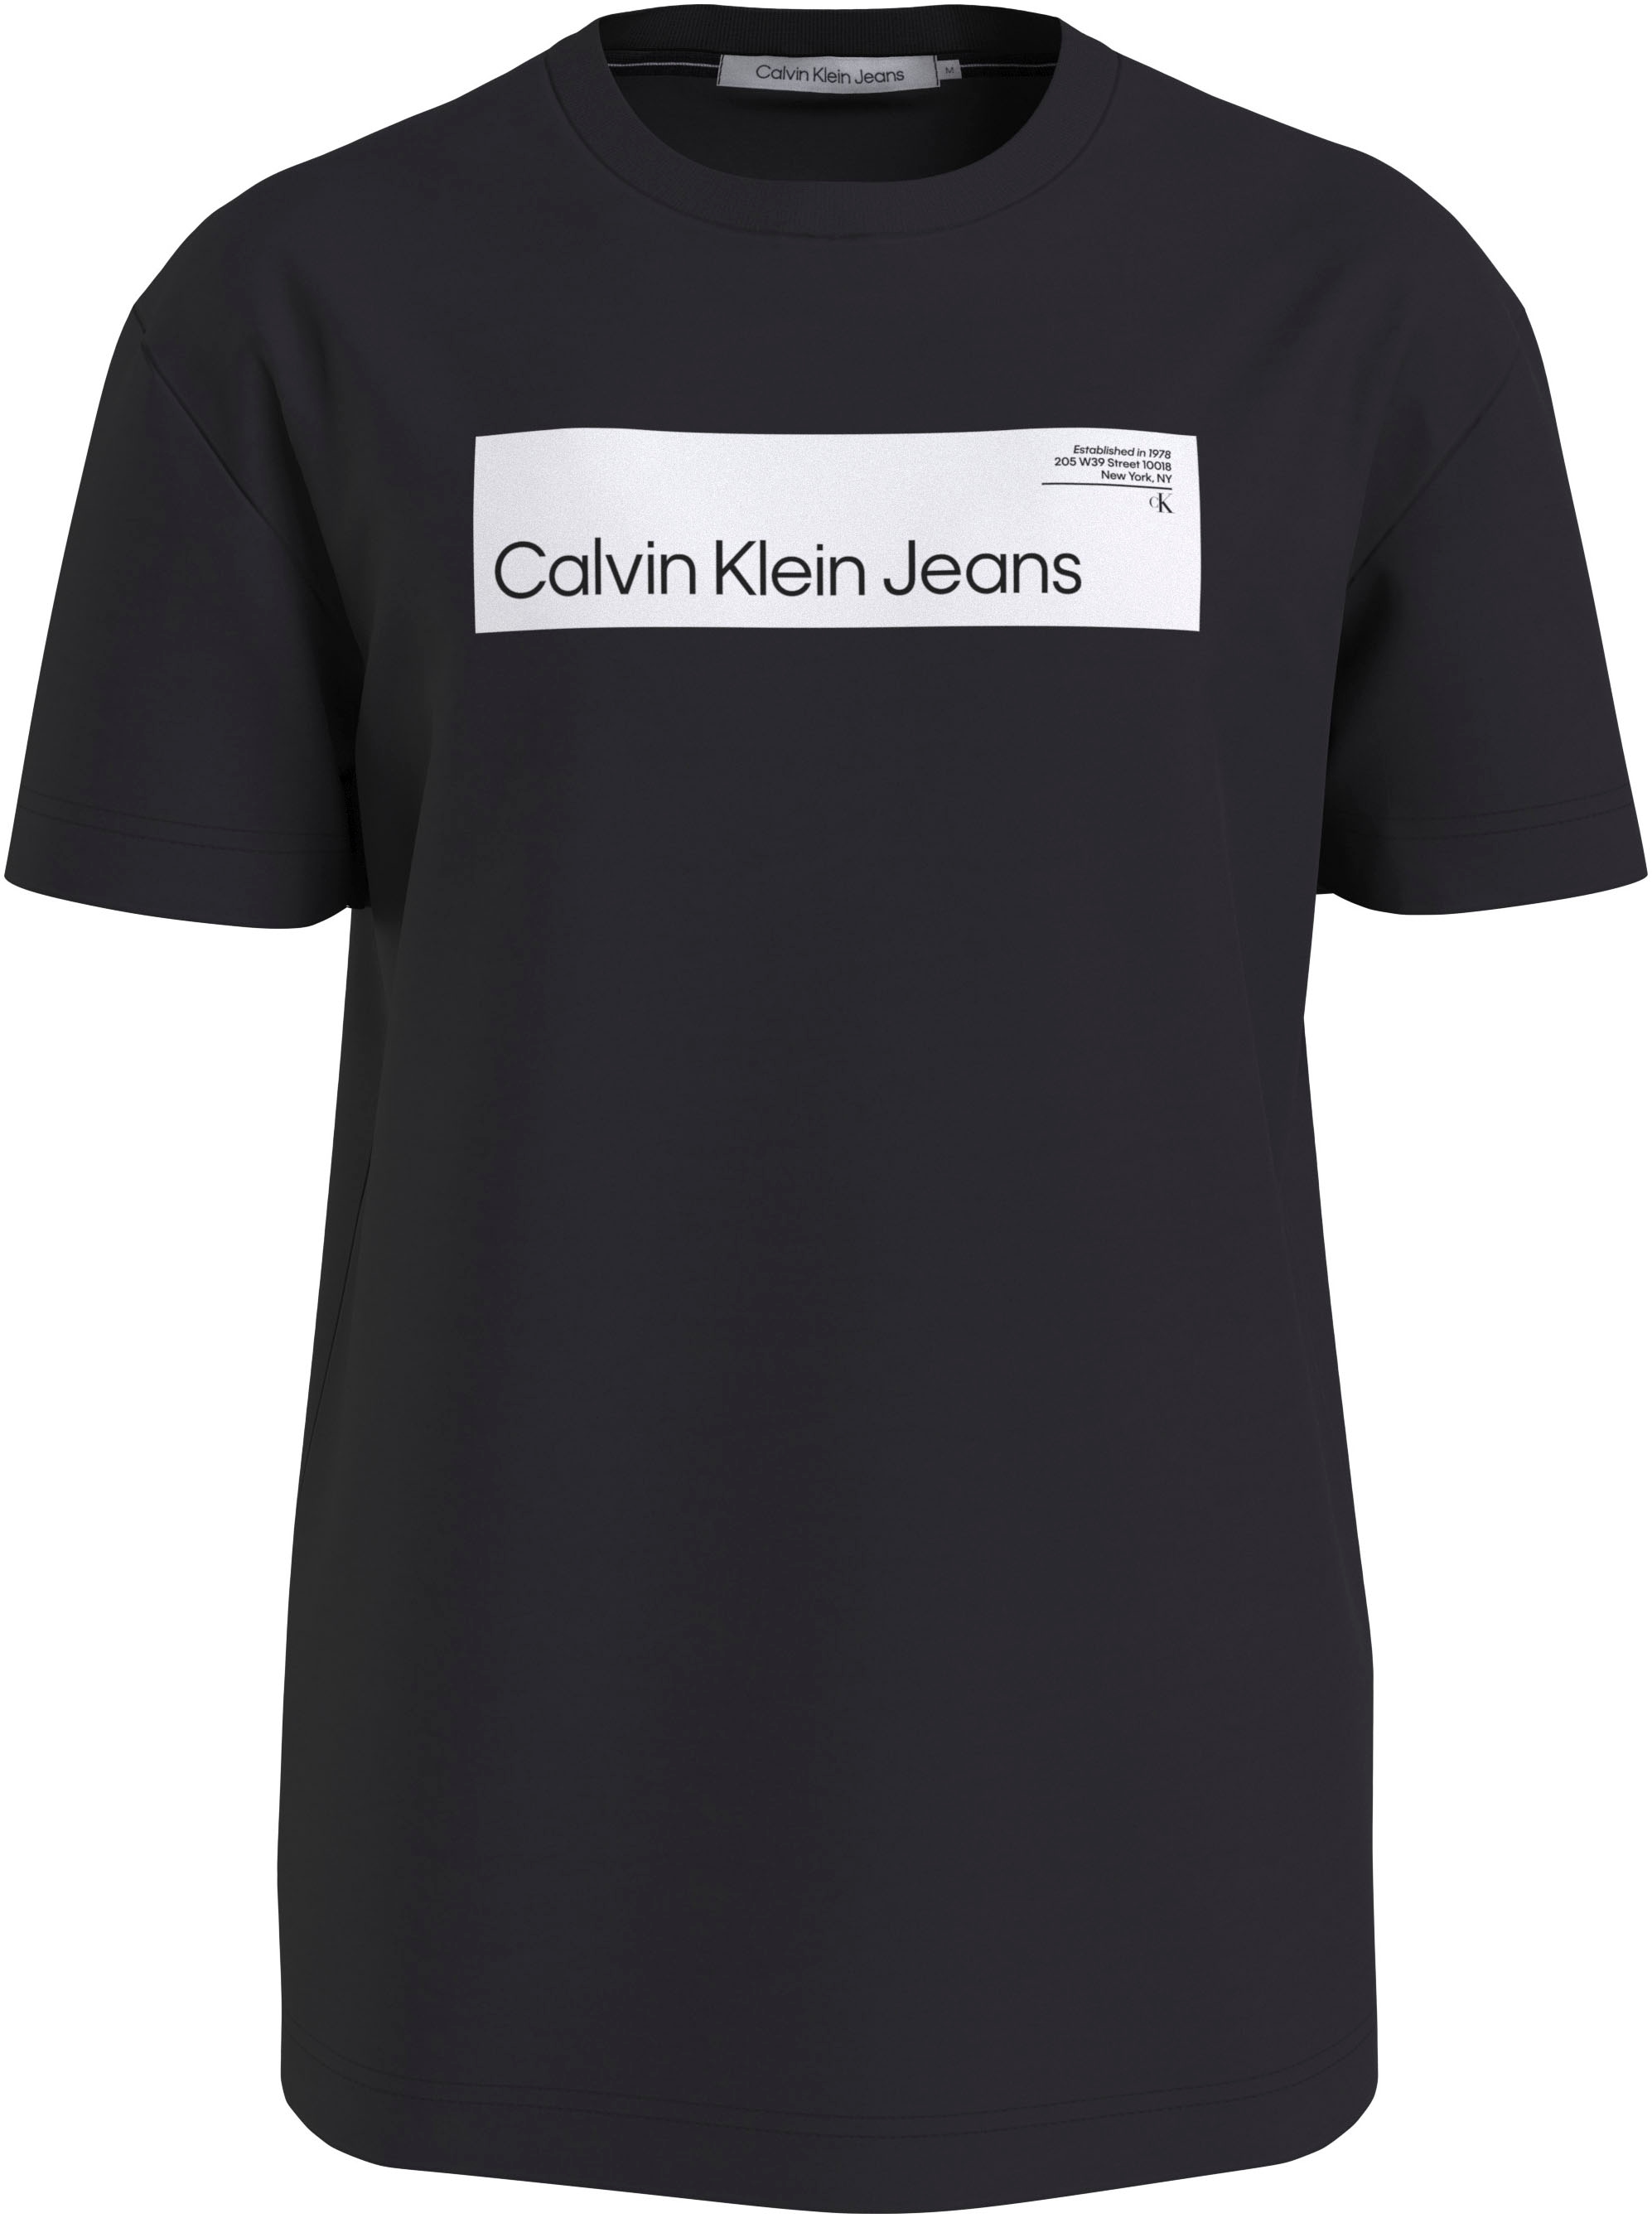 »PLUS REAL Plus | T-Shirt Calvin Jeans BAUR HYPER Klein ▷ BOX LOGO TEE« für